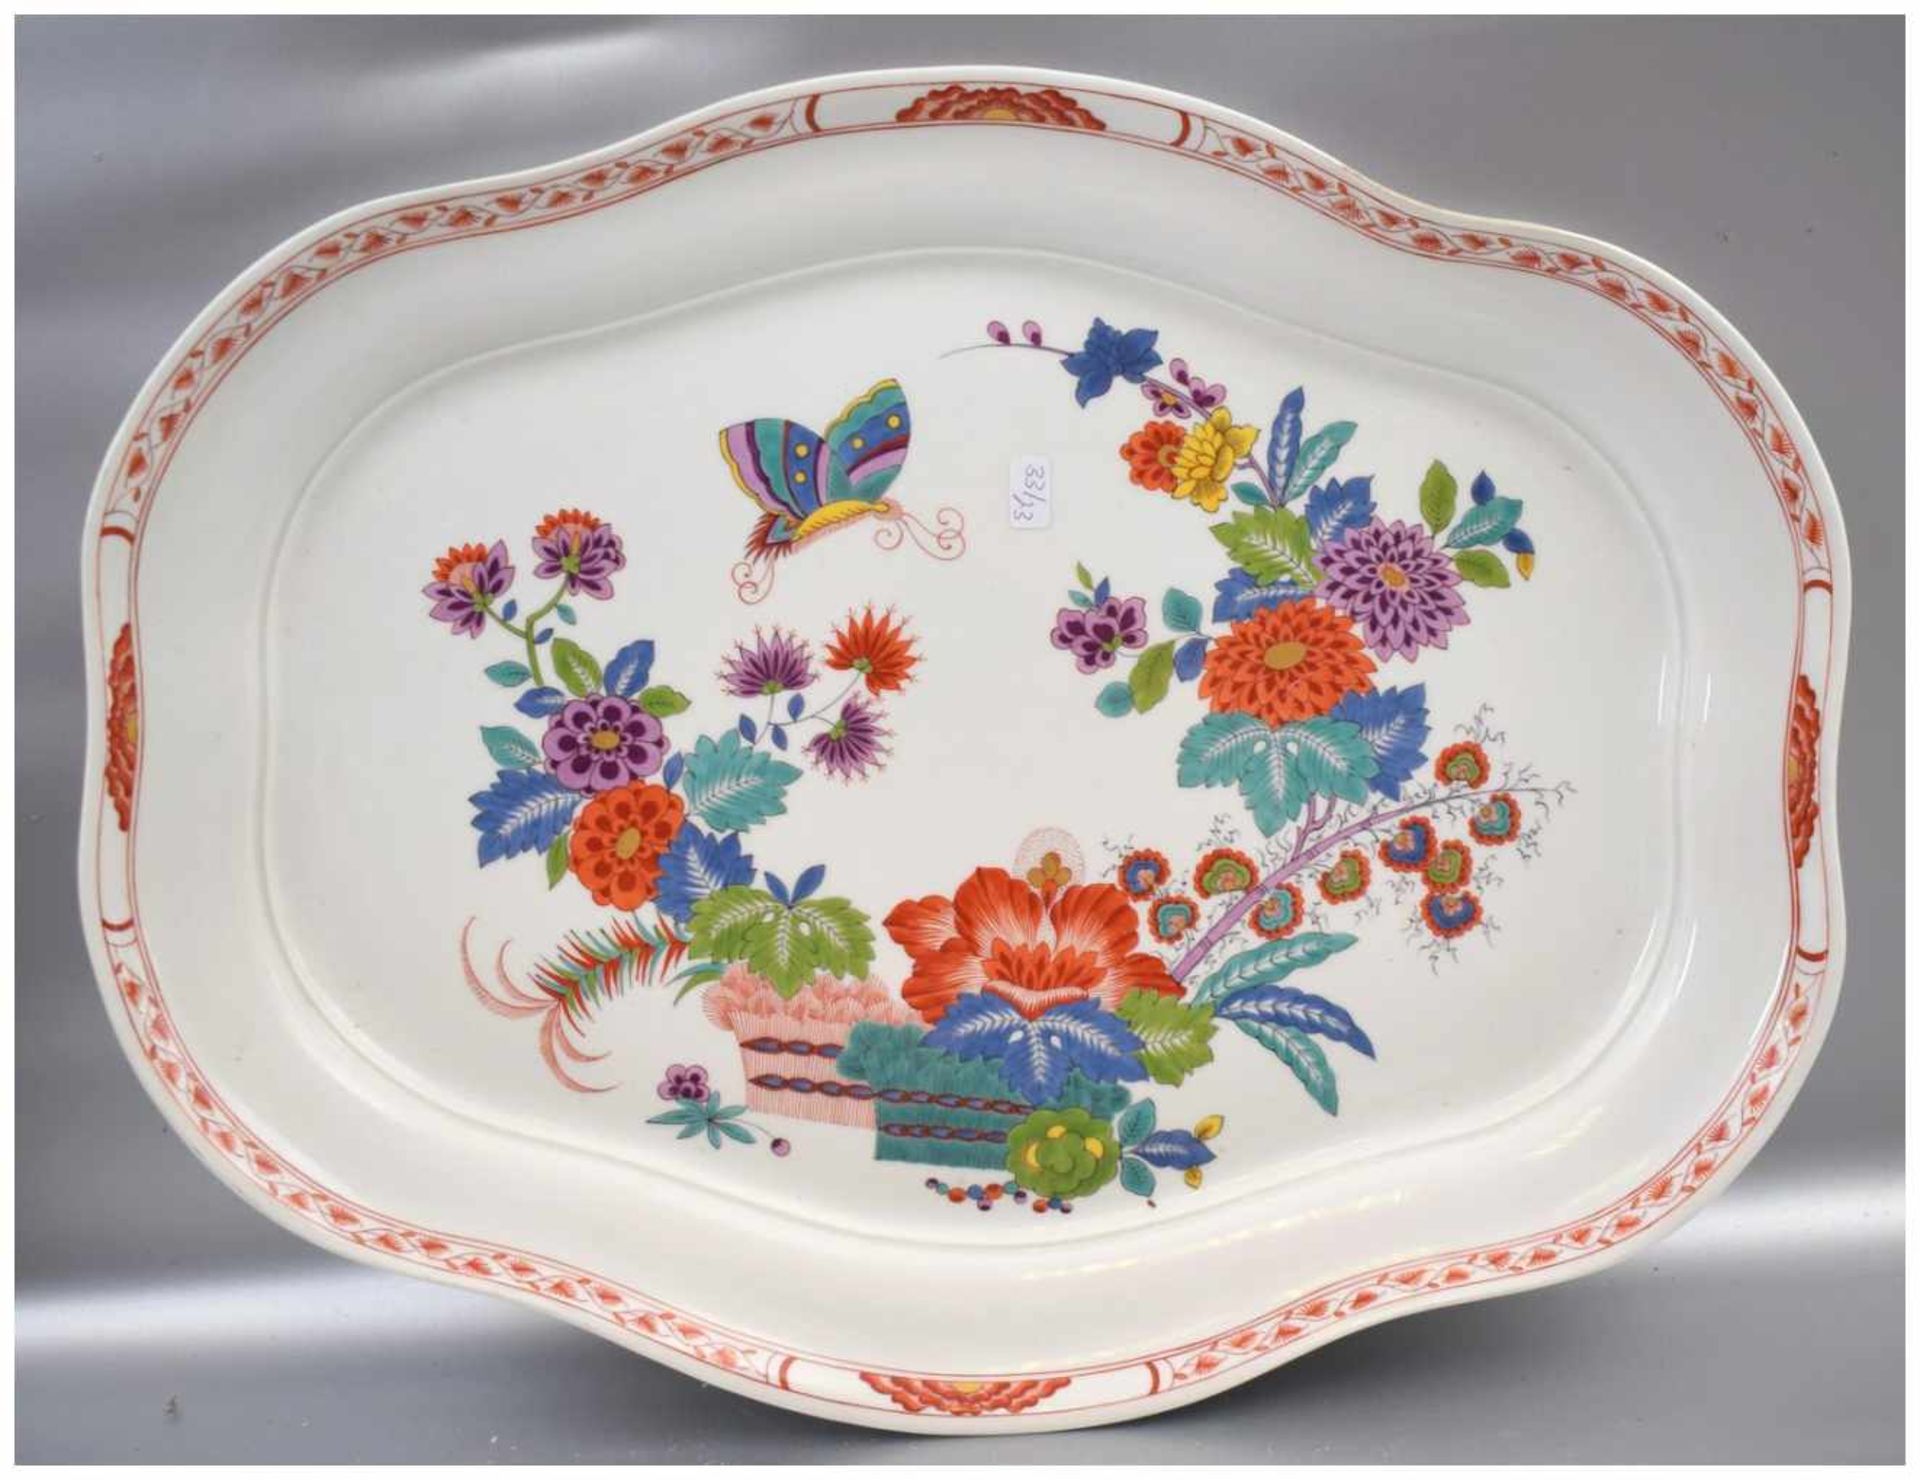 Große Platte oval, rot verzierter Rand, Spiegel mit asiatischen Blüten und Schmetterlingen bemalt,